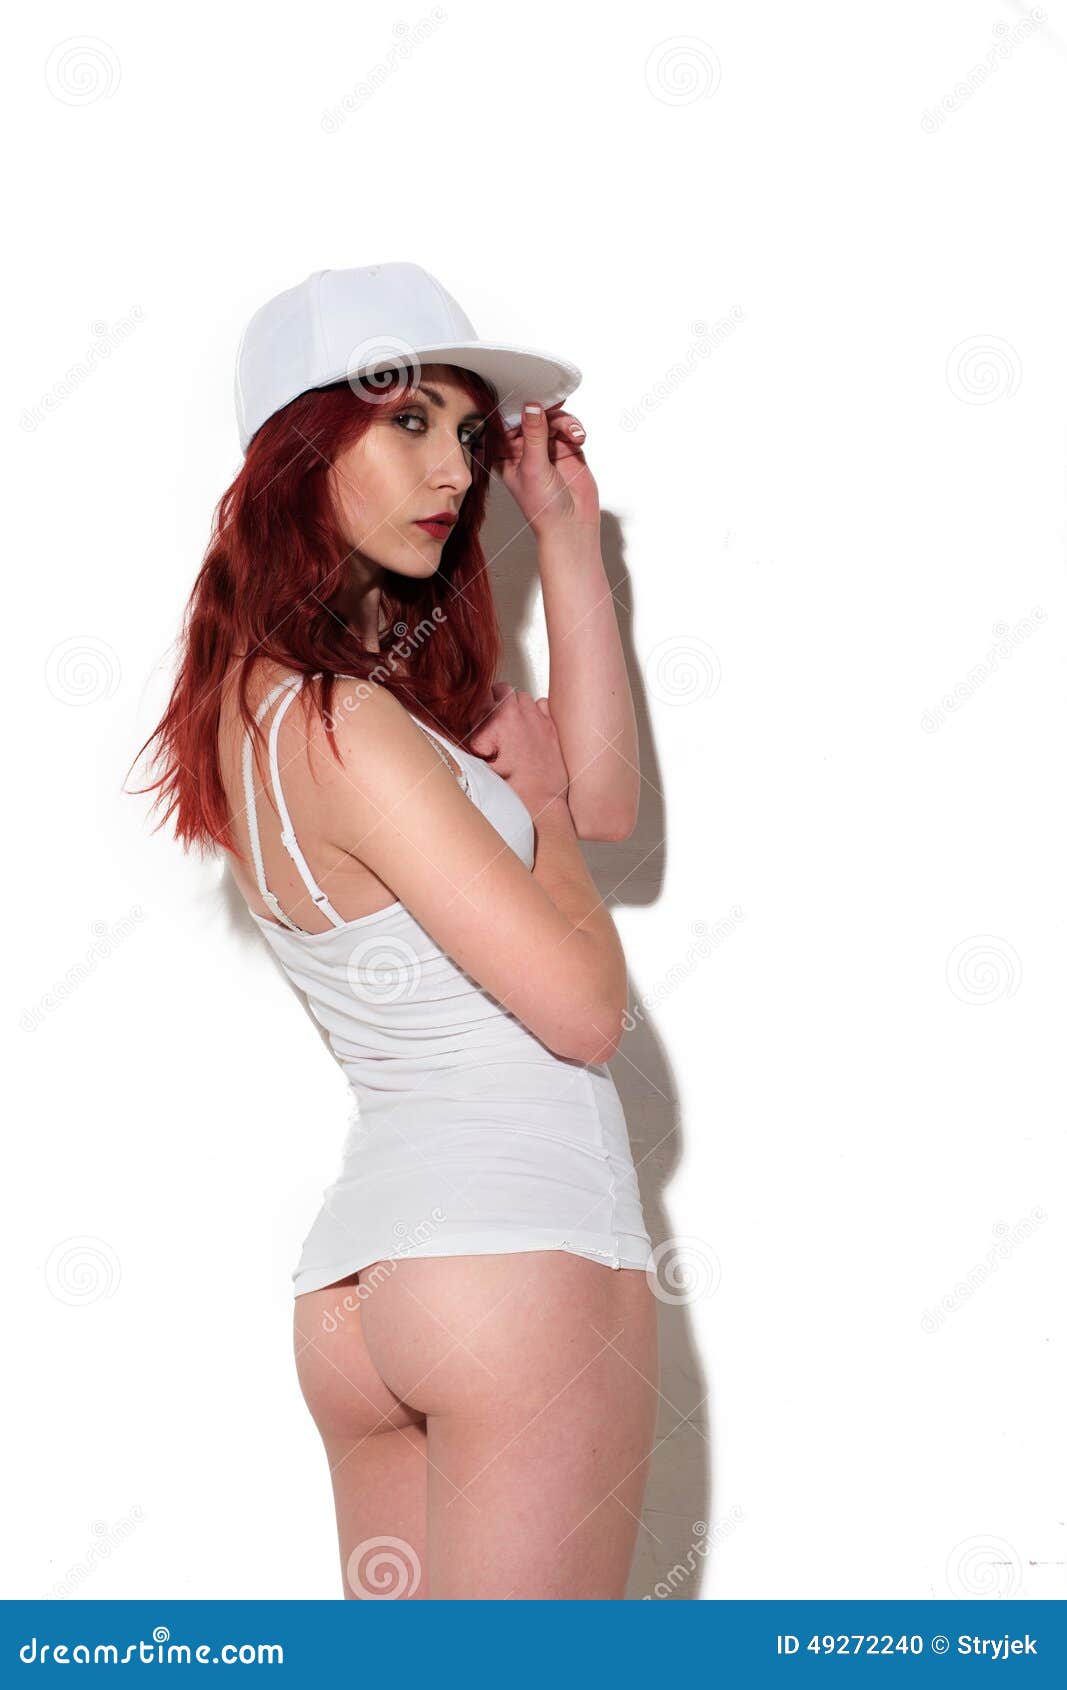 sexy underwear butt selfie